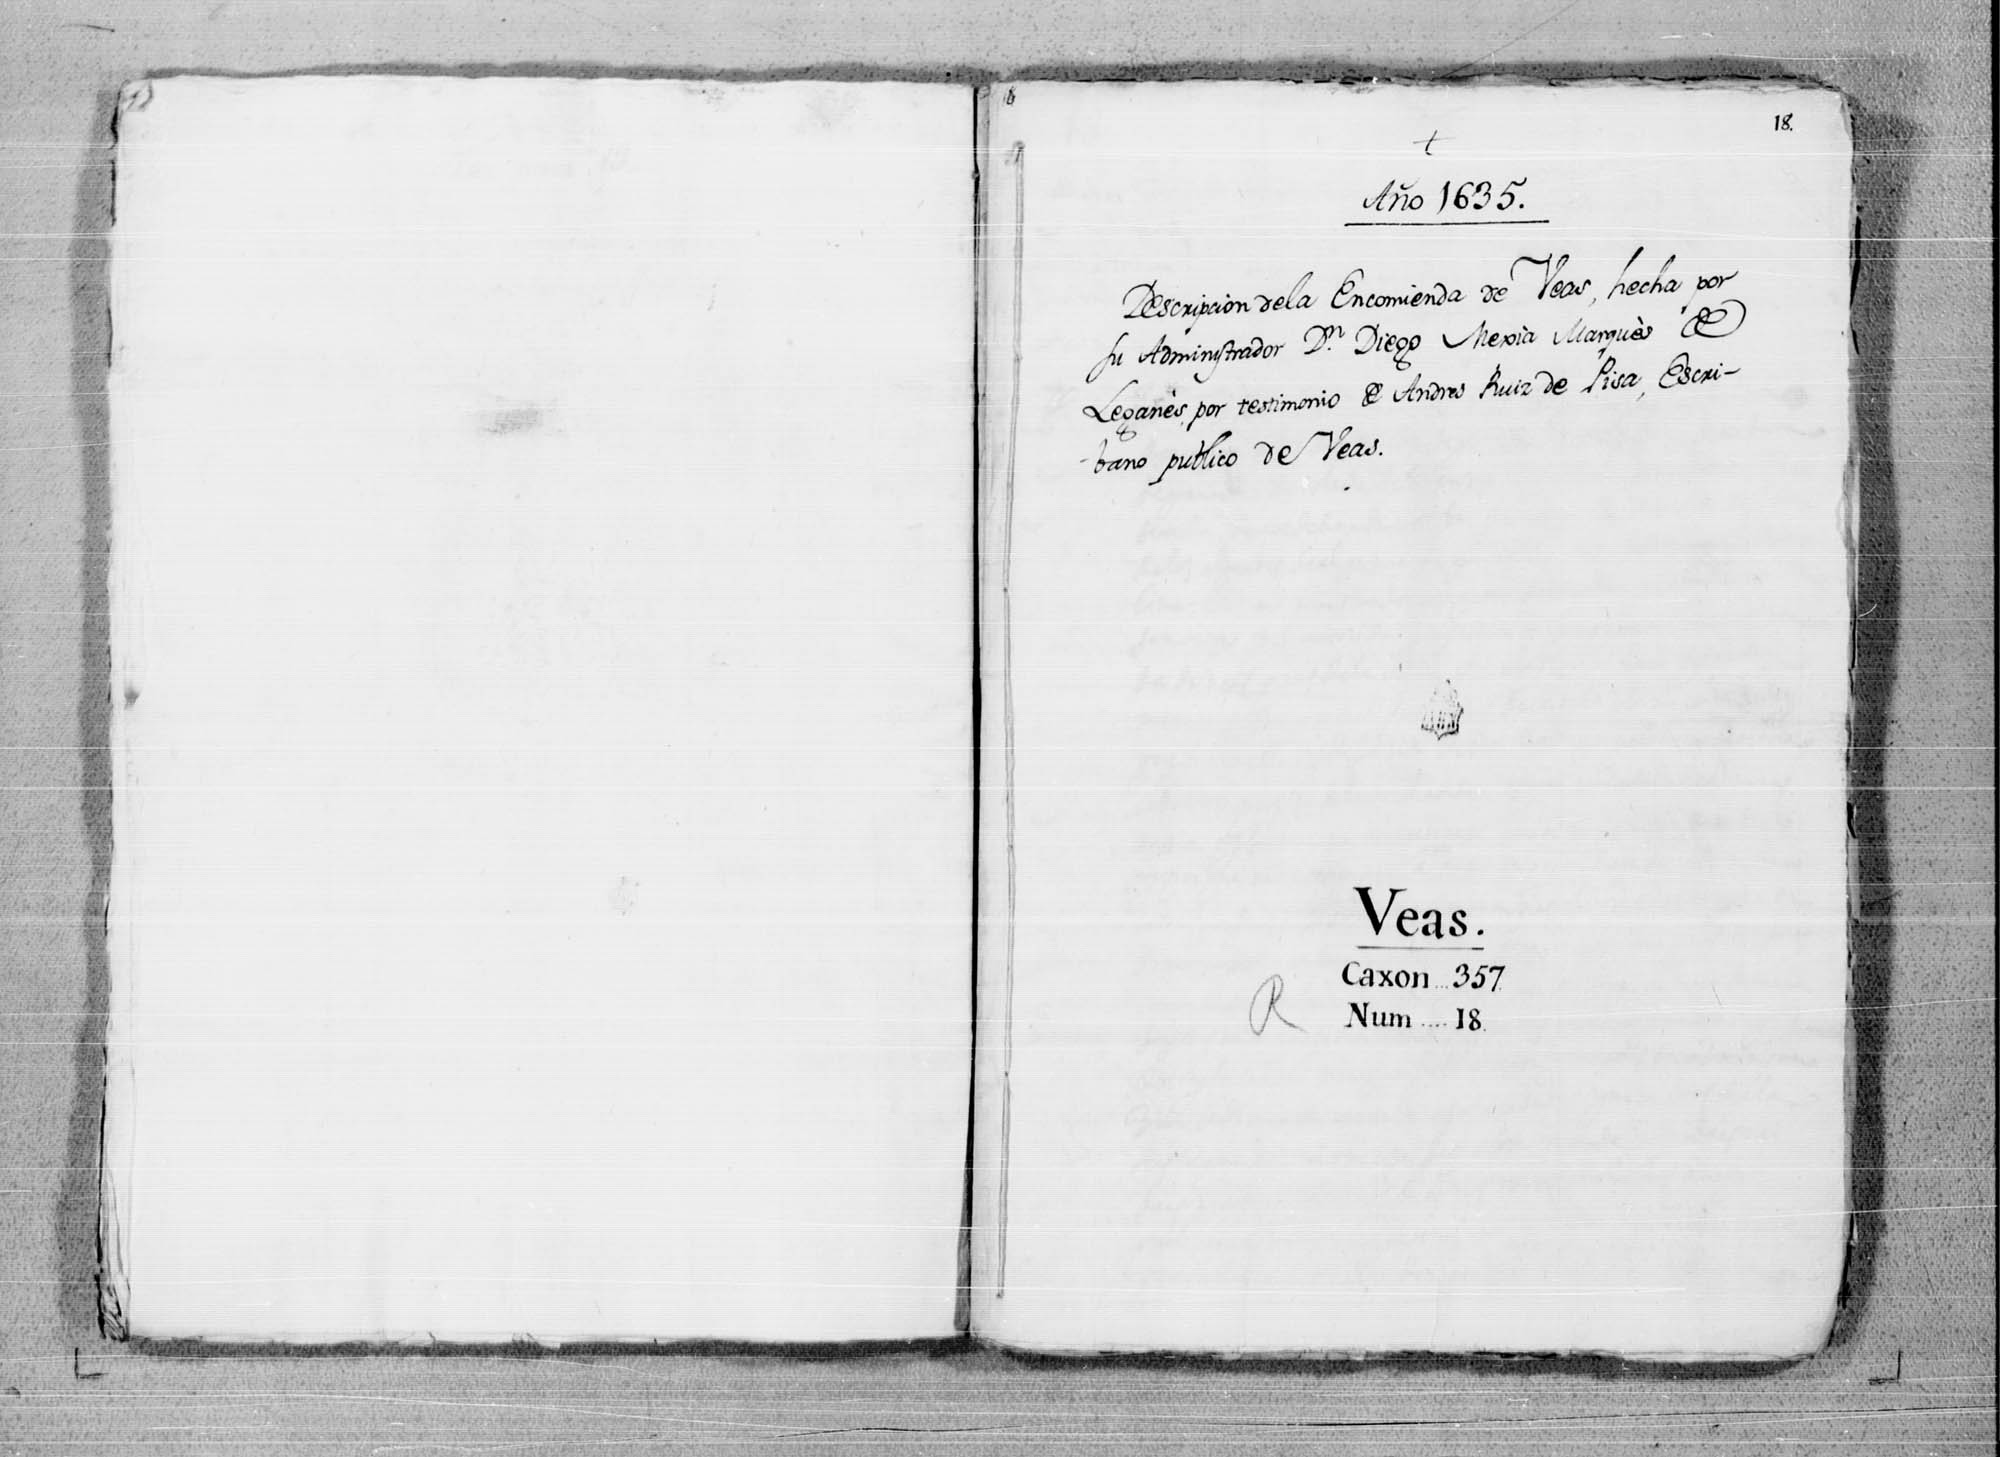 Descripción de la encomienda de Beas de Segura, realizada por orden del comendador Diego Mexía, marqués de Leganés.